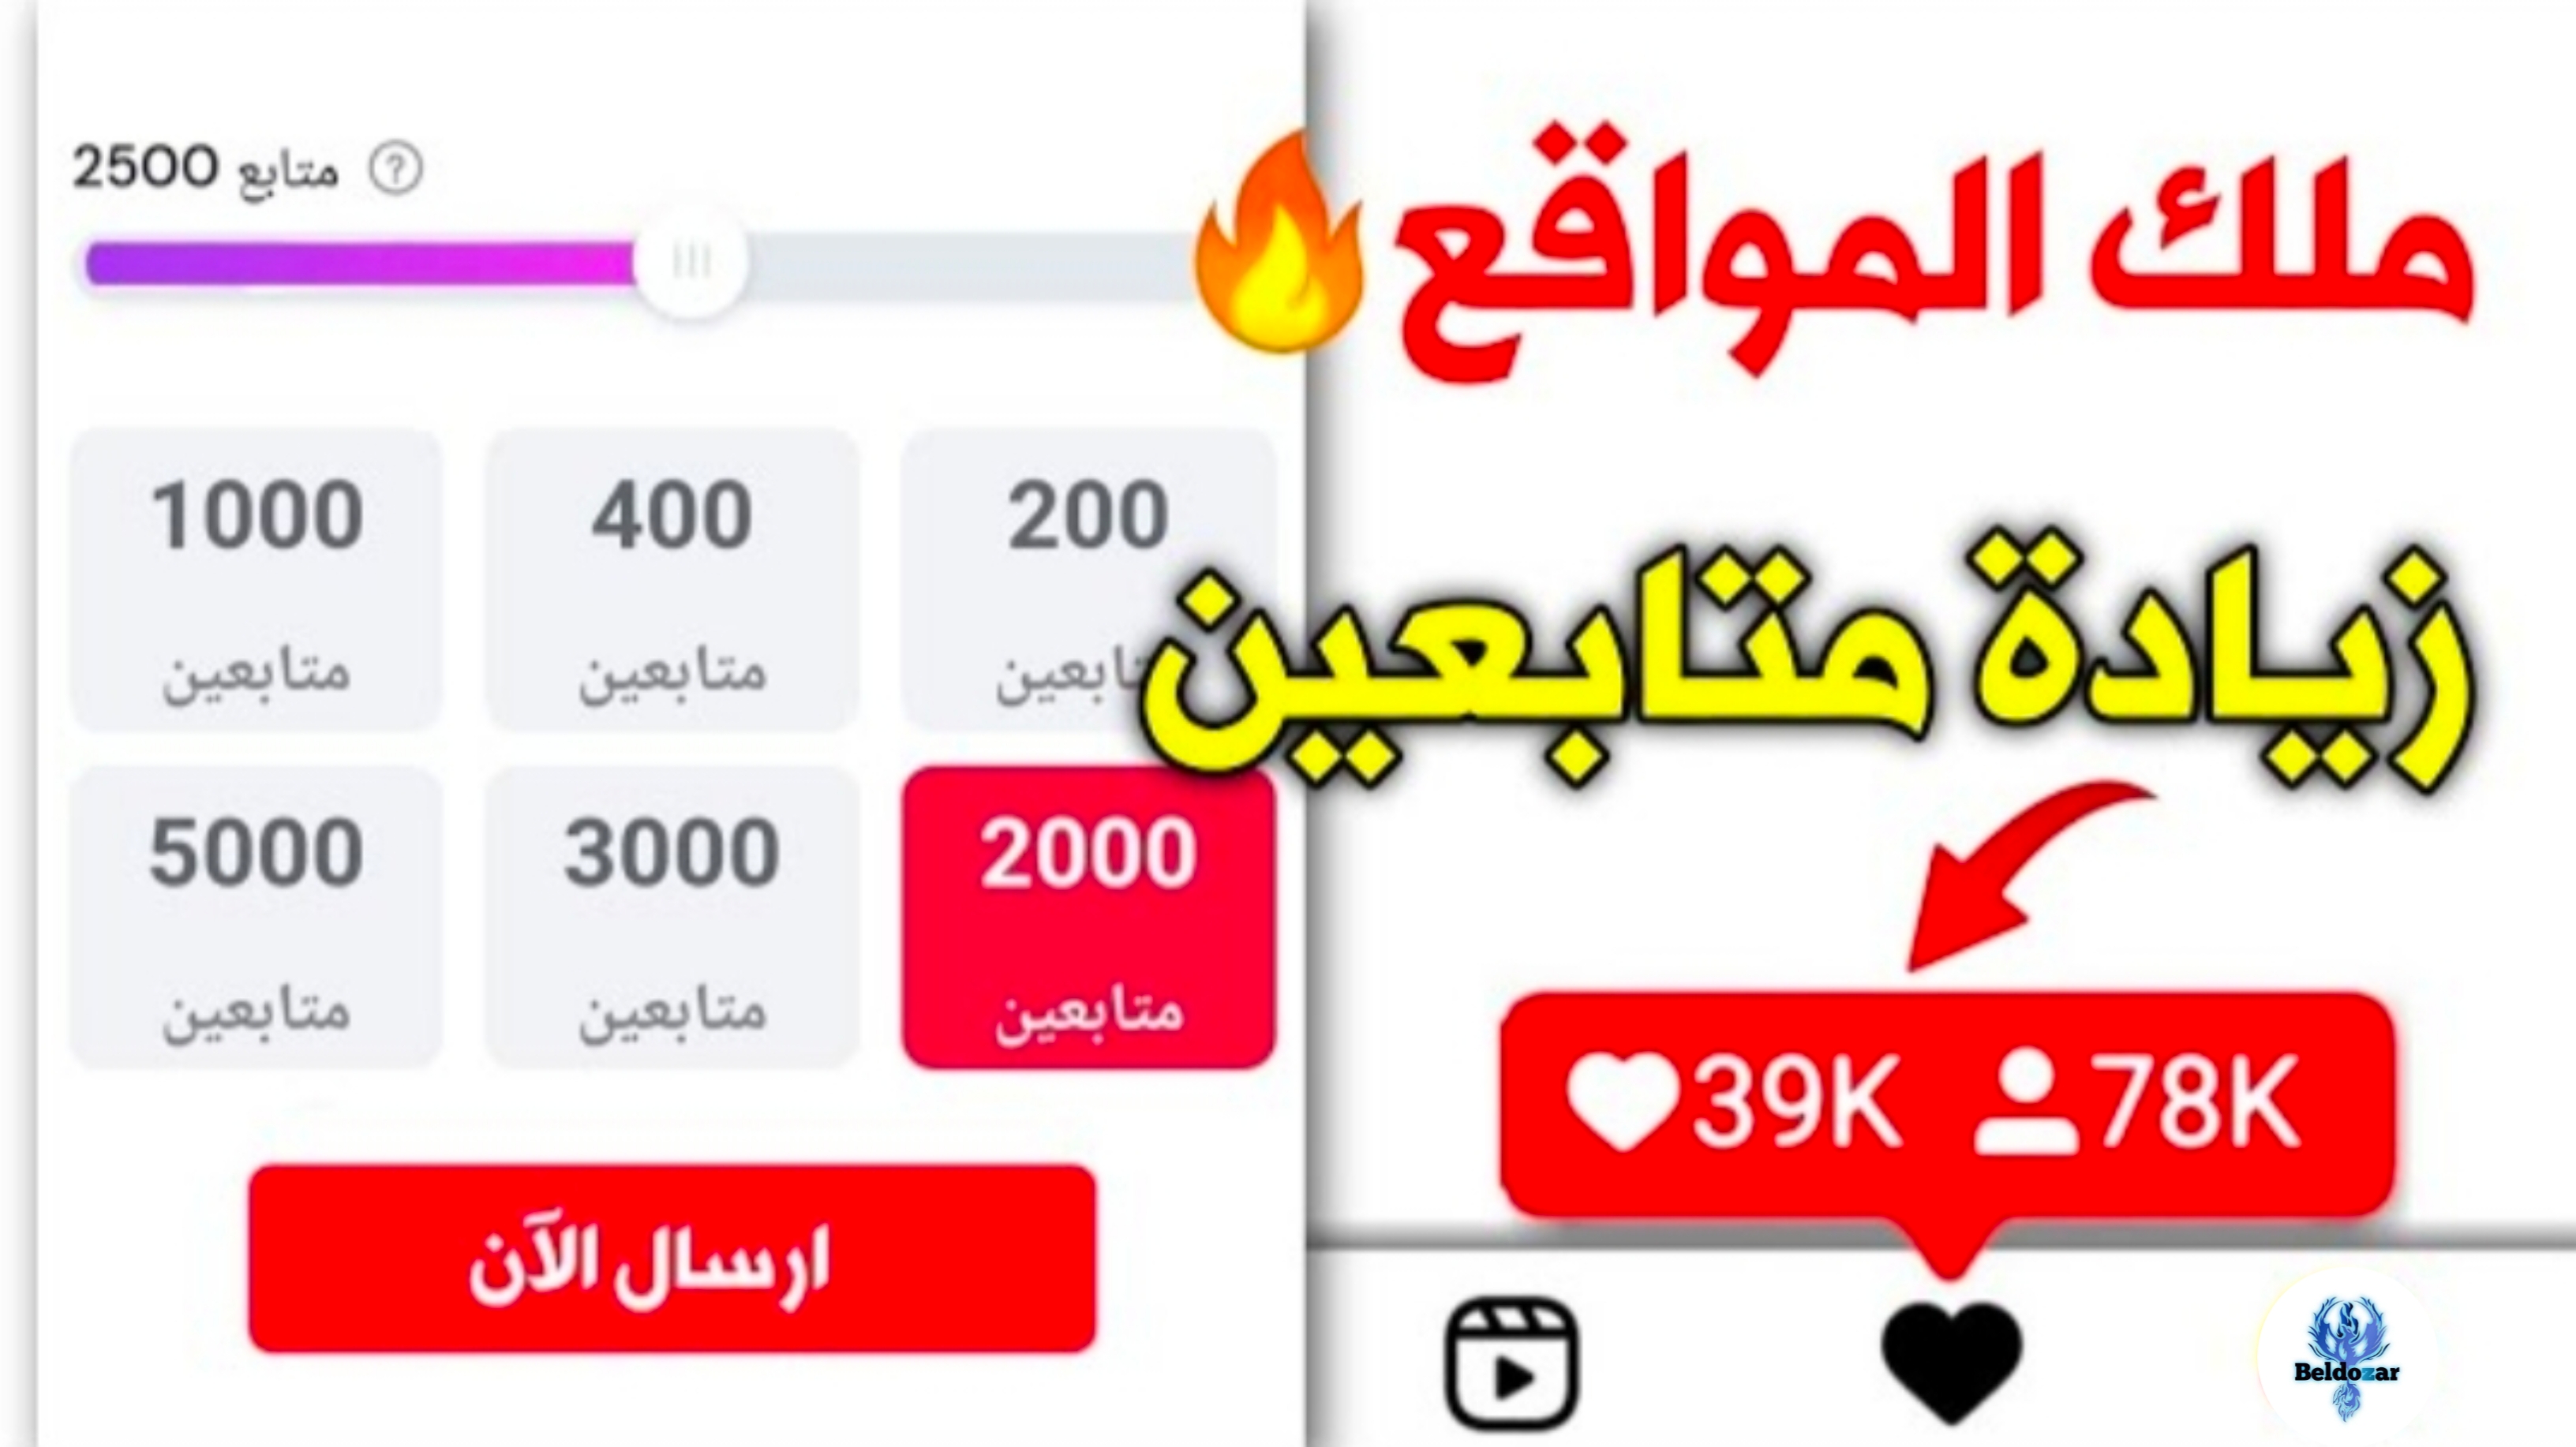 طريقة زيادة متابعين انستقرام عرب حقيقين مجانا 10k يوميا | بلدوزر للشروحات